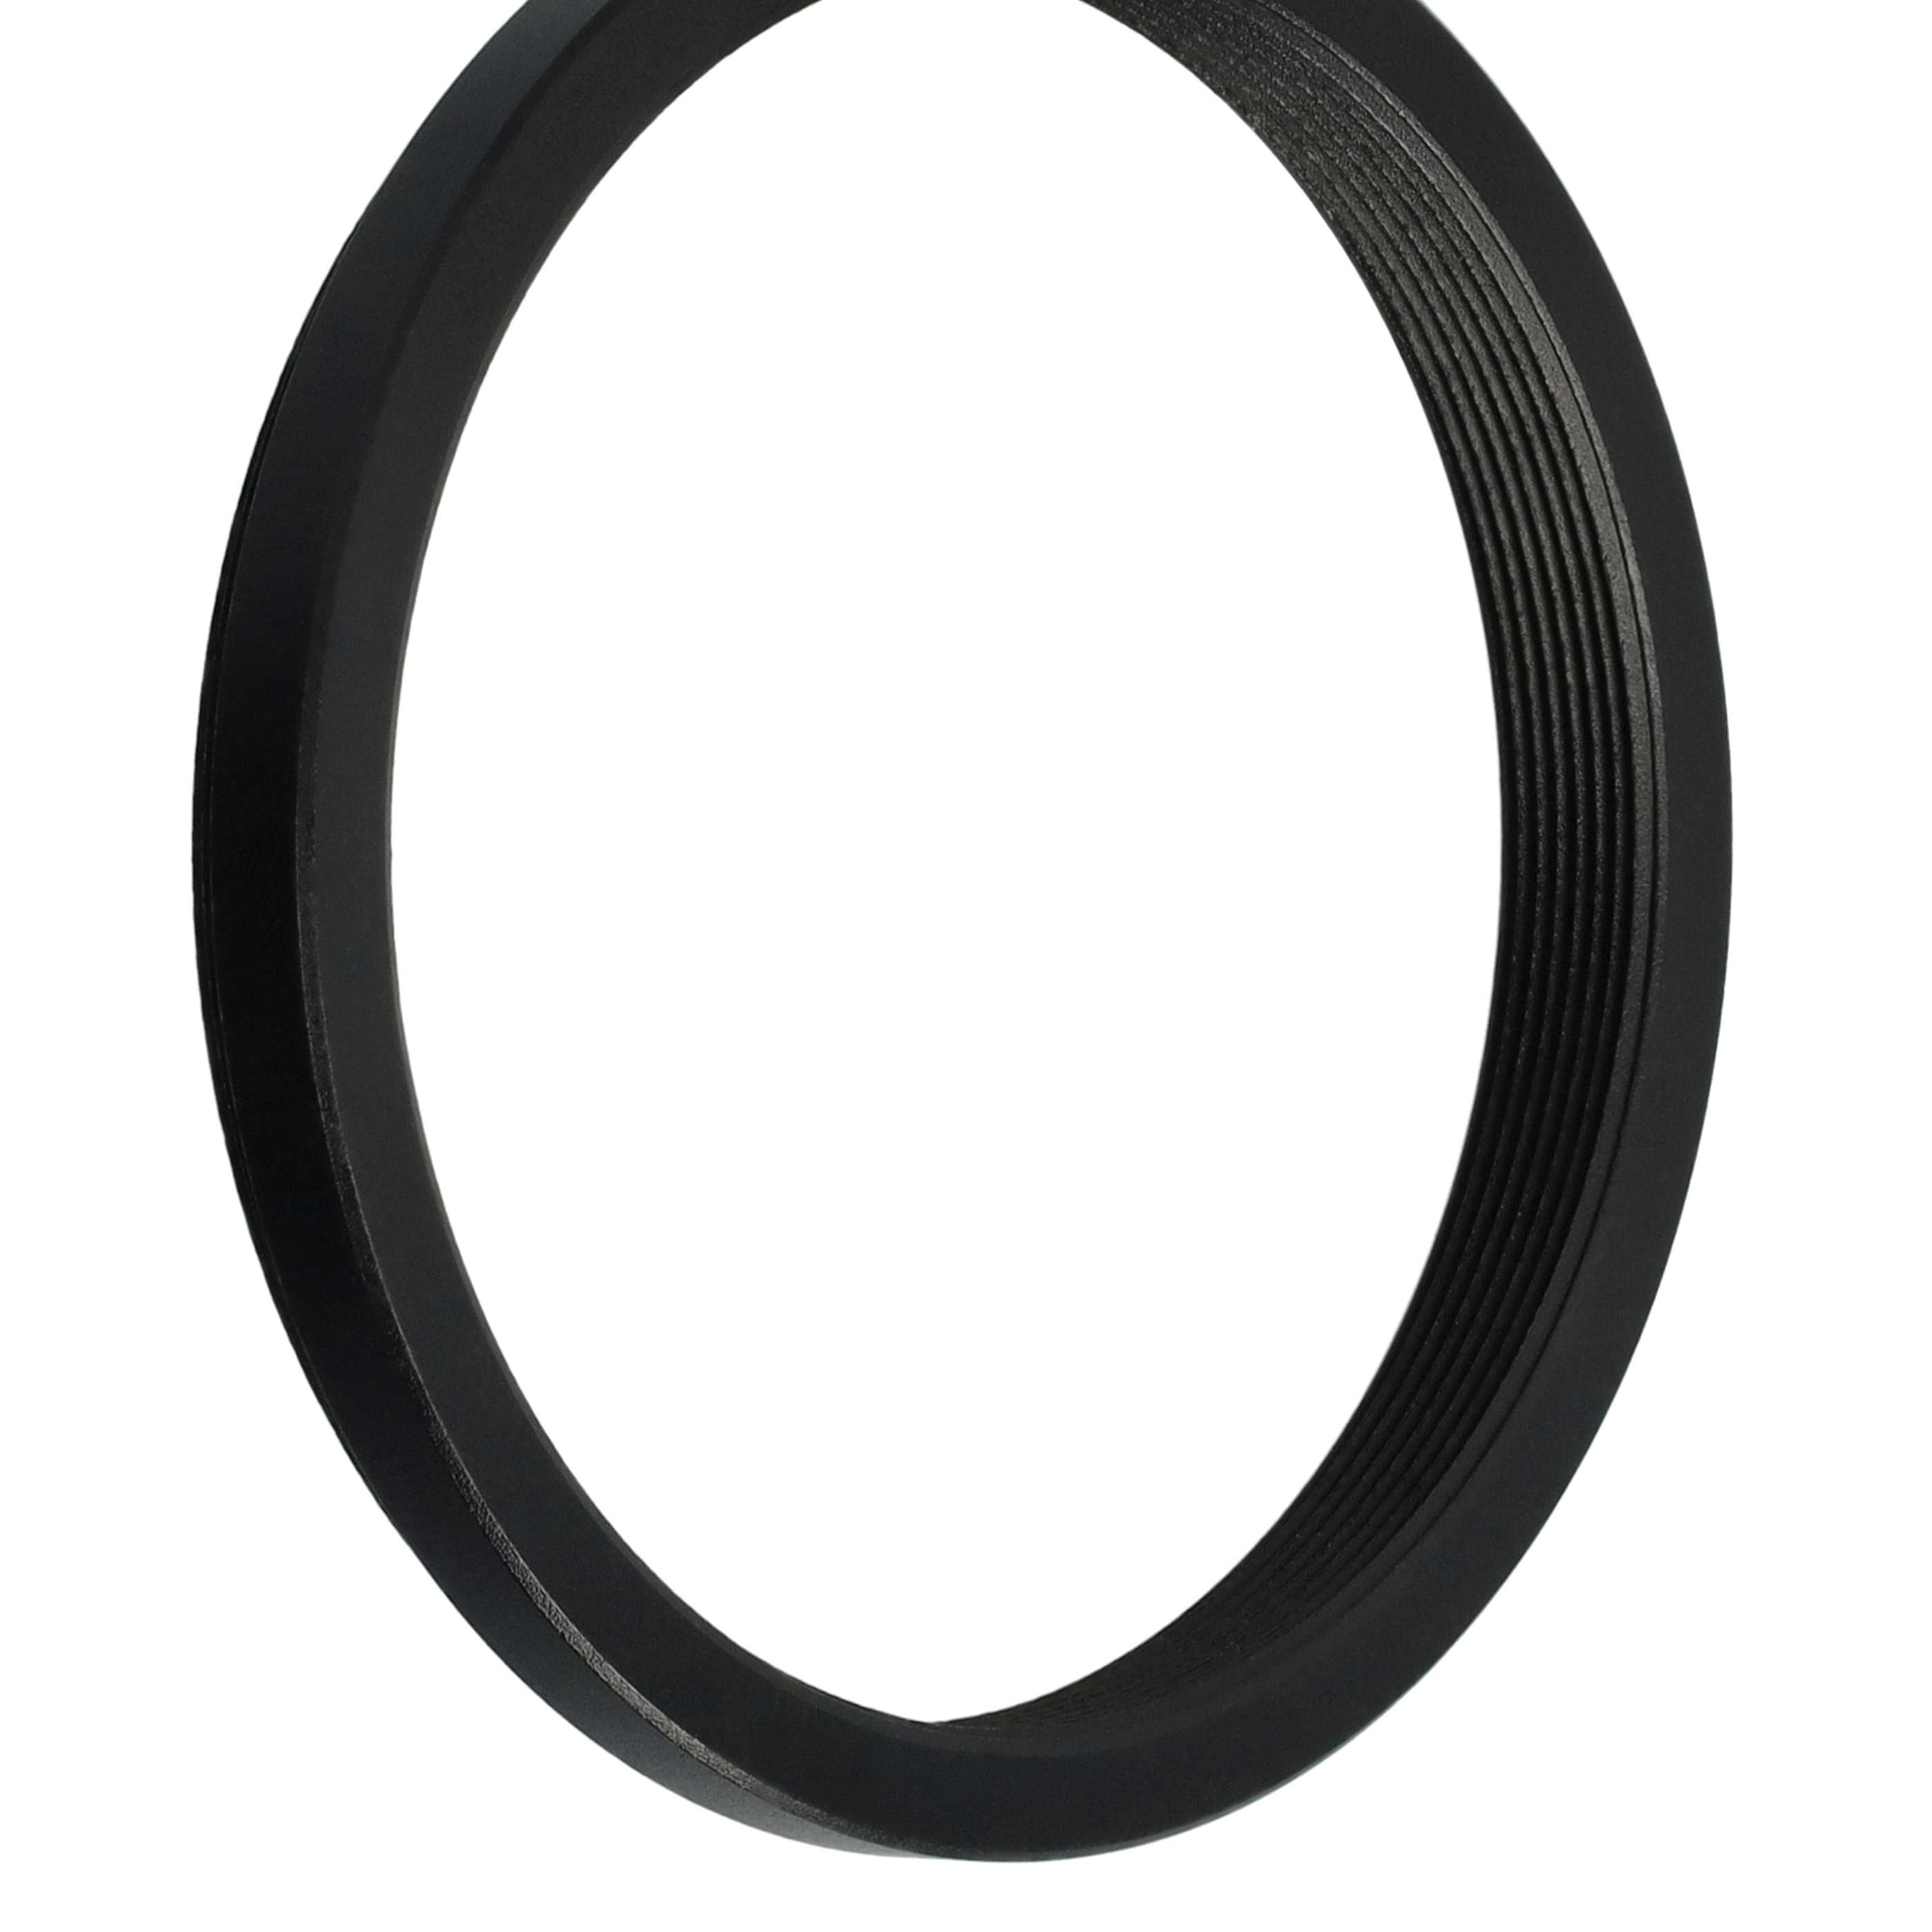 Anello adattatore step-down da 52 mm a 48 mm per obiettivo fotocamera - Adattatore filtro, metallo, nero